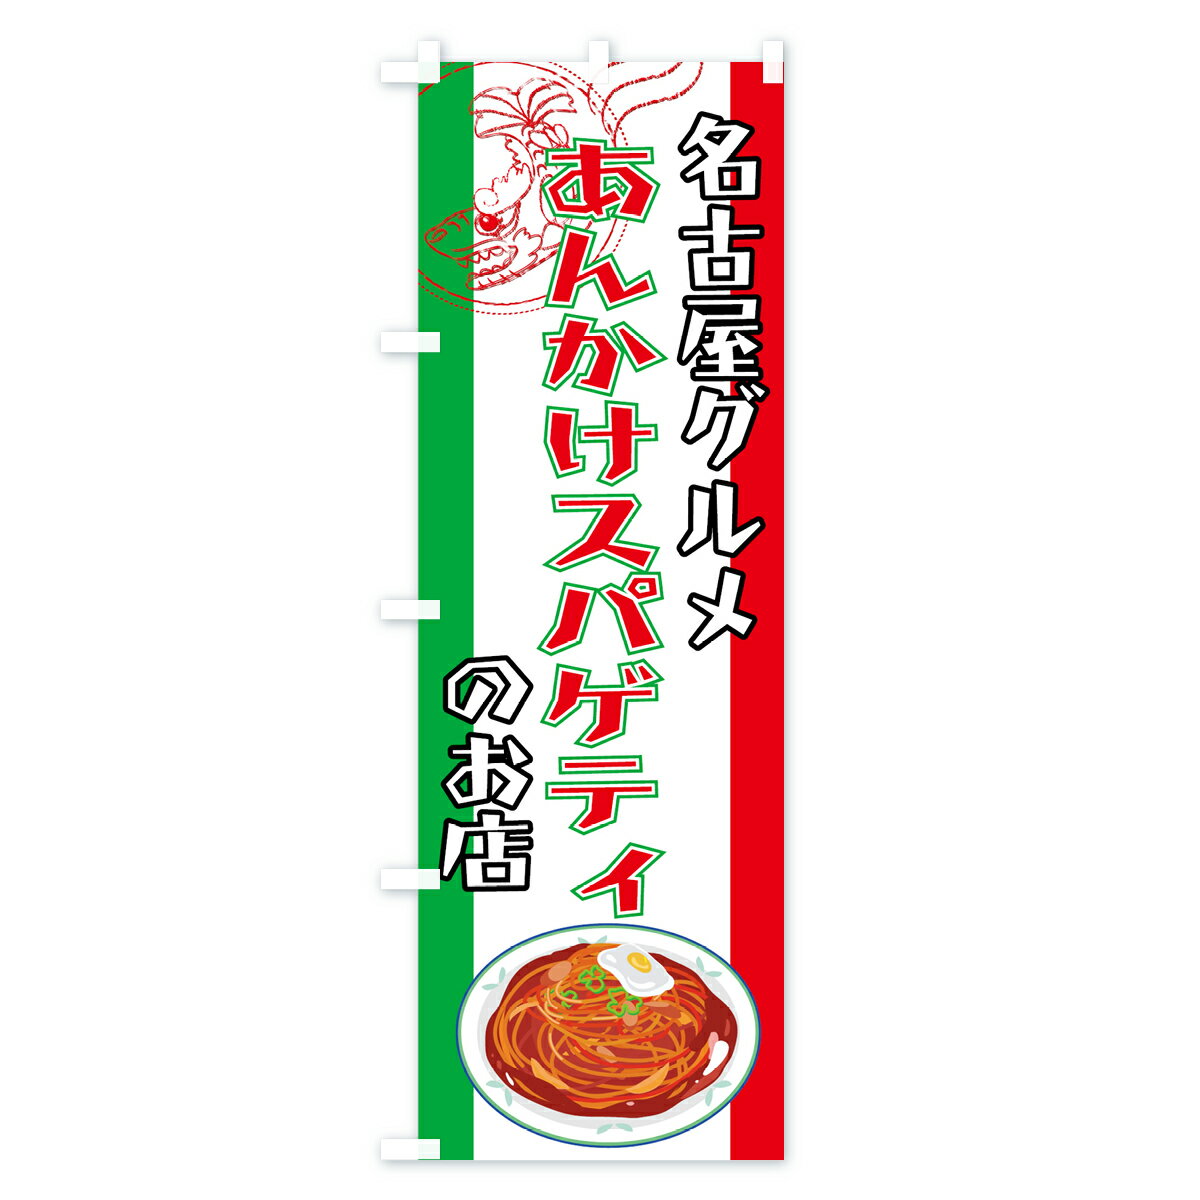 【3980送料無料】 のぼり旗 あんかけスパゲティのぼり あんかけパスタ パスタ・スパゲティ